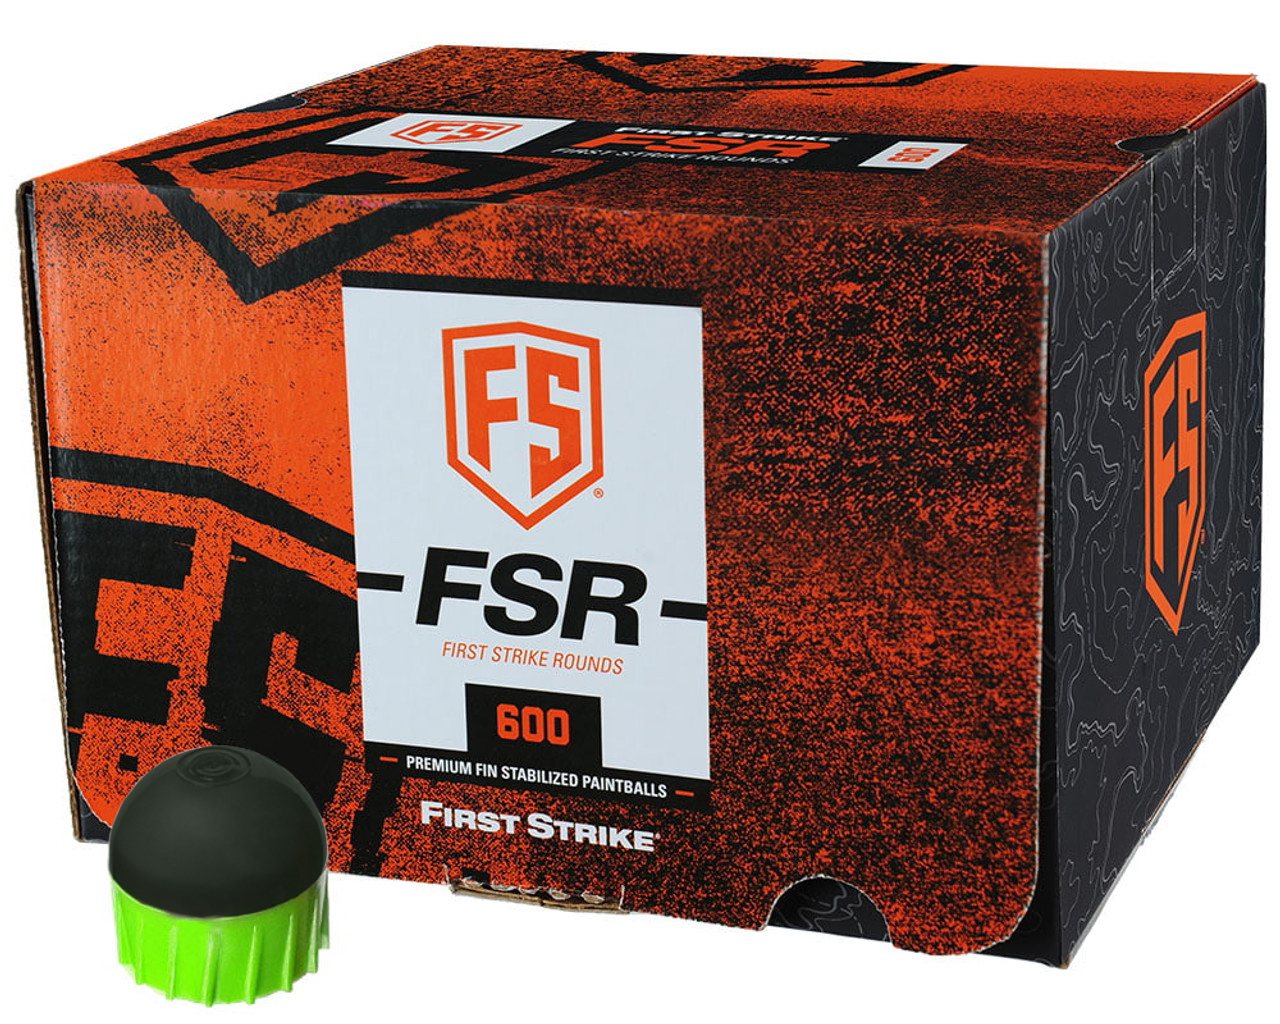 First Strike FSR 600 Round Green-Green